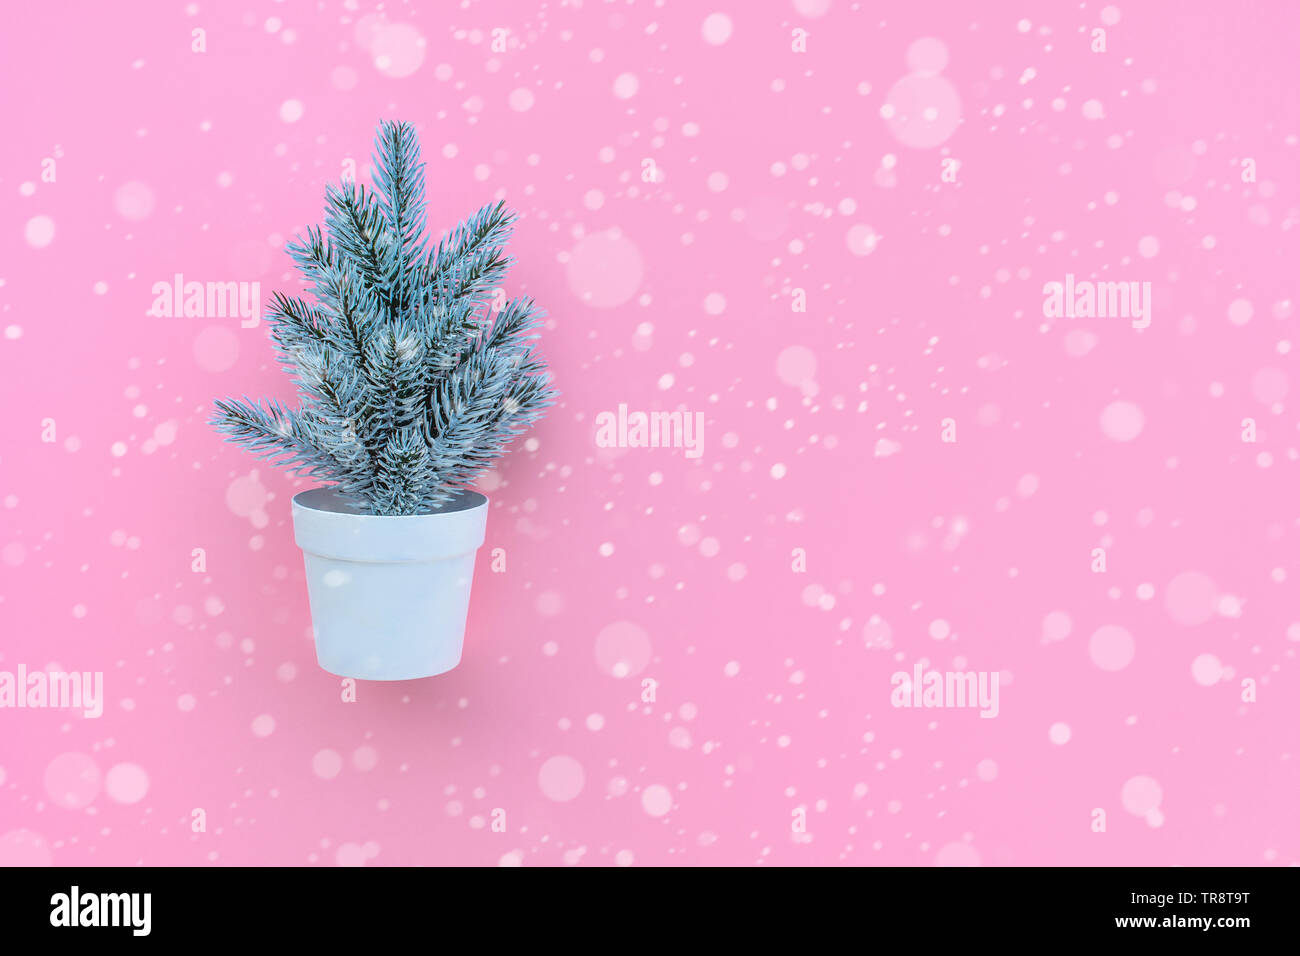 Carino pino in pentola con neve su sfondo rosa.Buon Natale e concetti d'inverno idee.Stile minimal Foto Stock